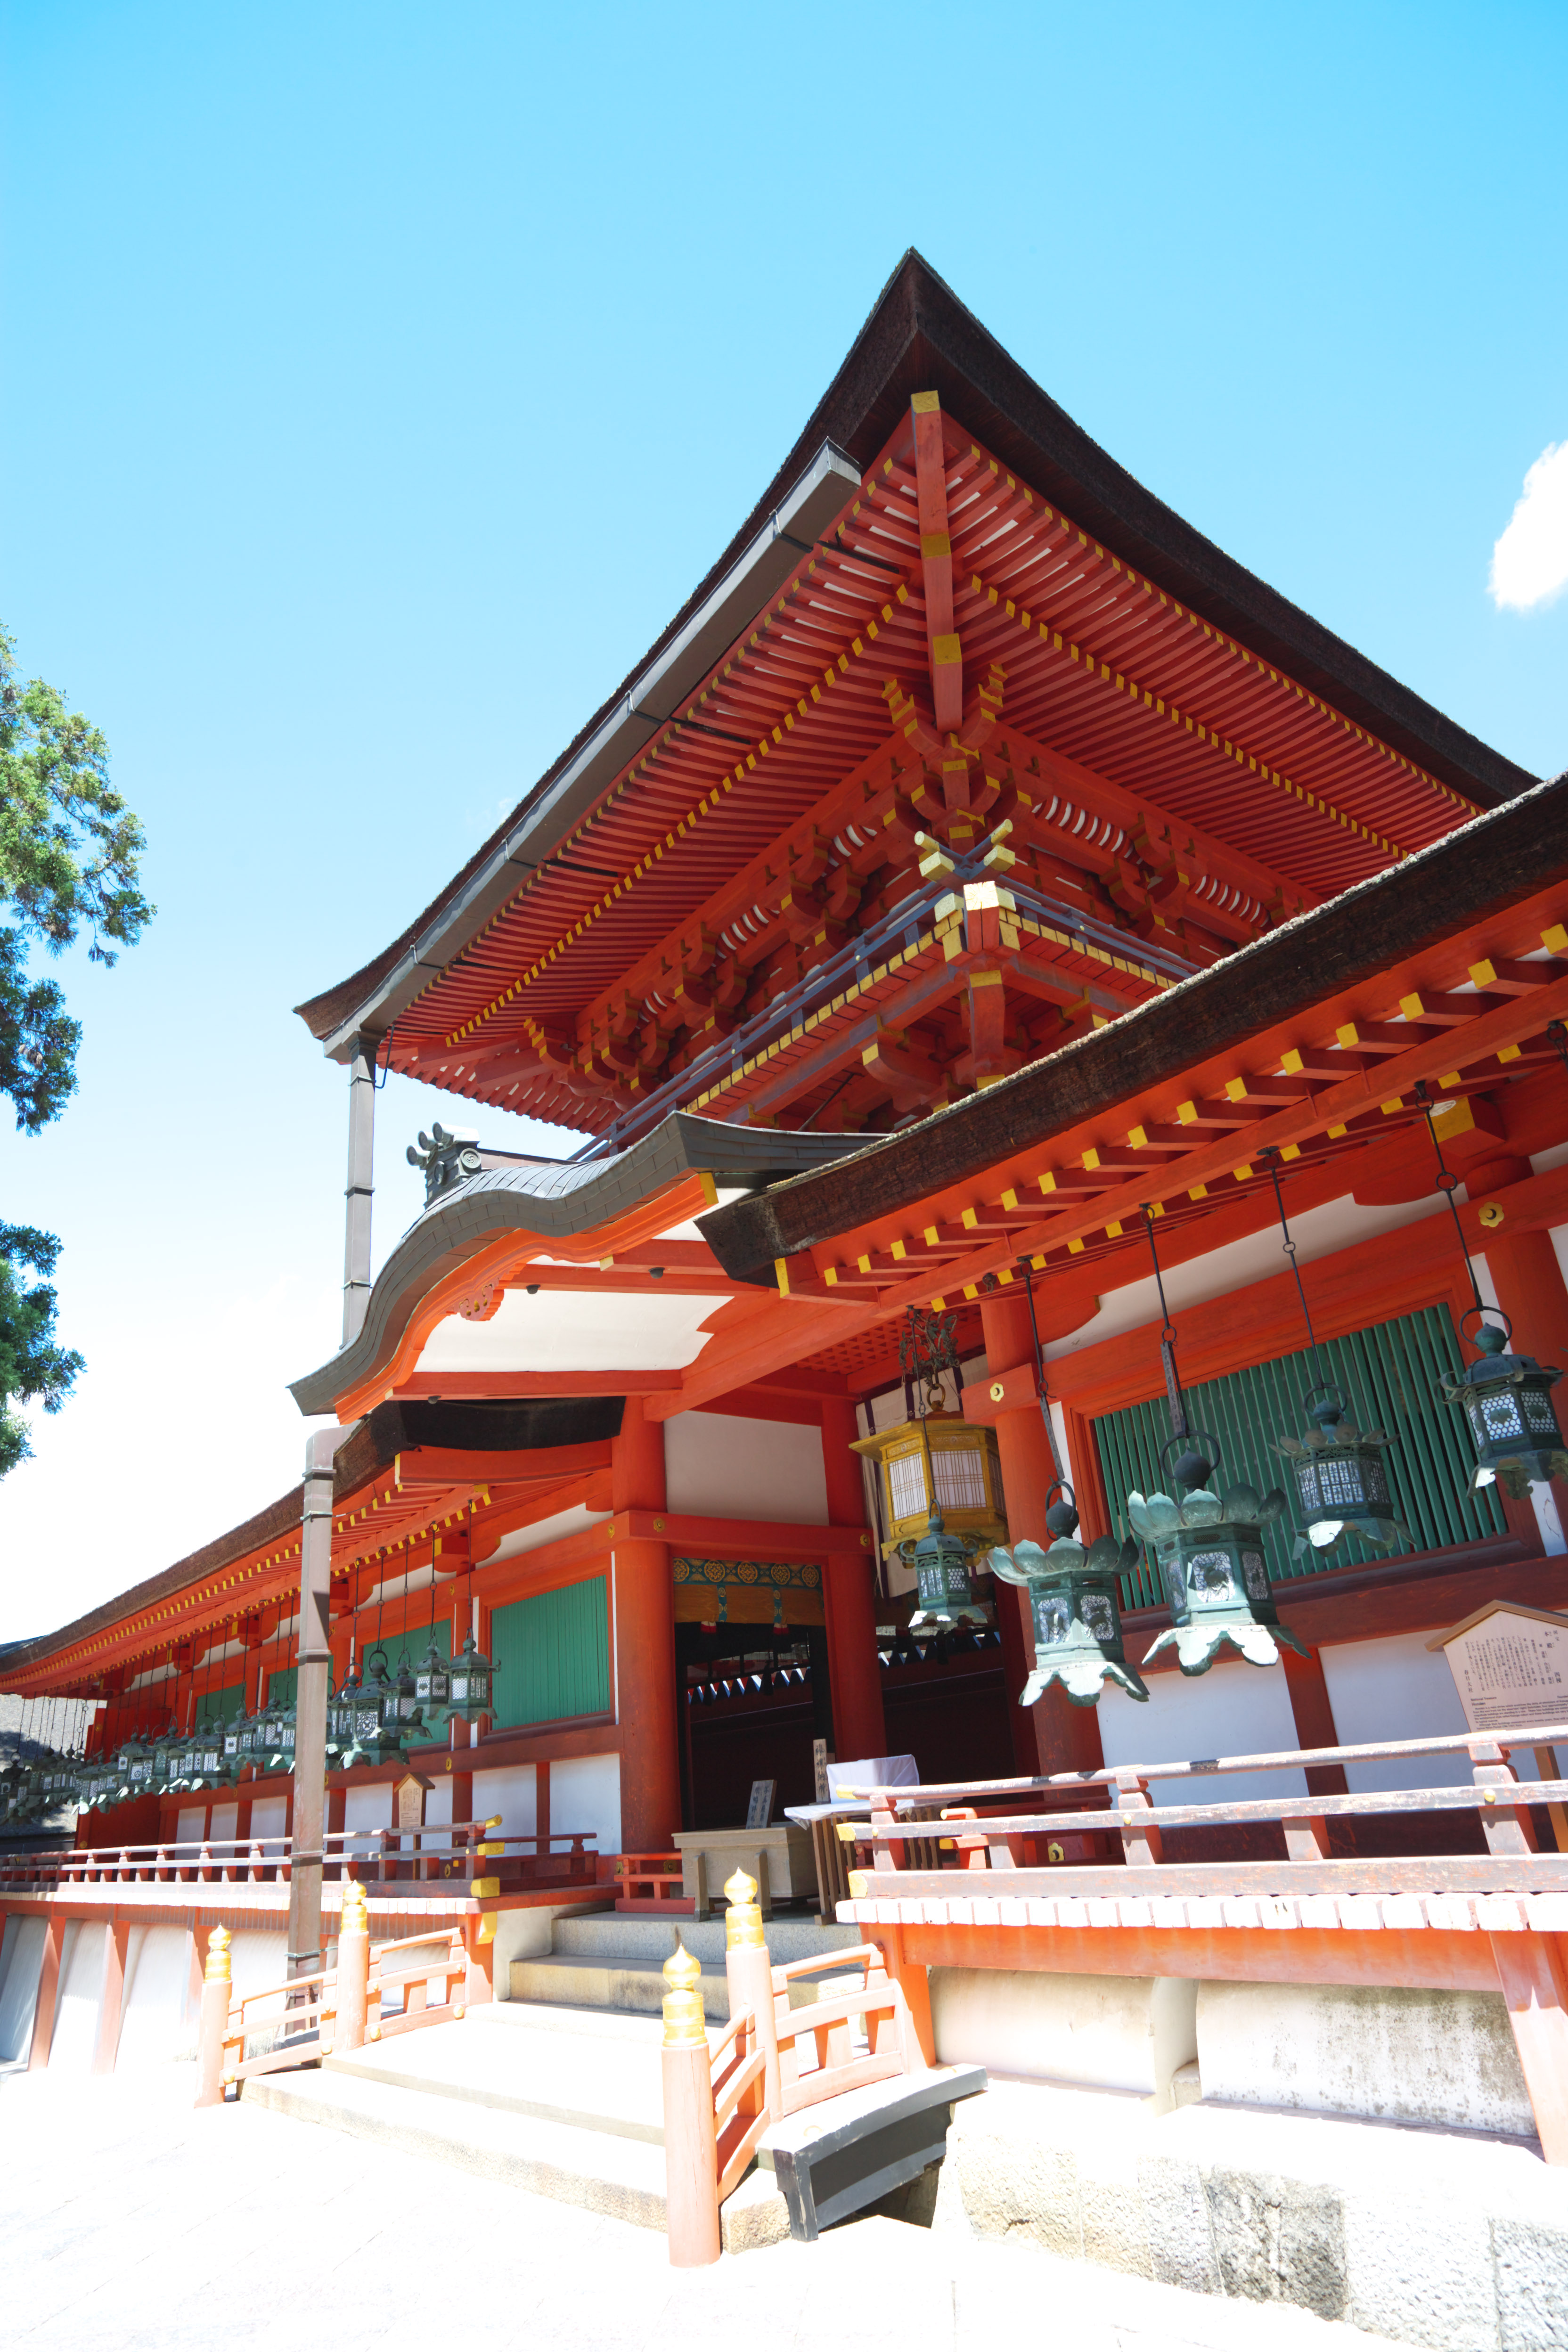 photo, la matire, libre, amnage, dcrivez, photo de la rserve,Kasuga Taisha temple, Shintosme, Temple shintoste, Je suis peint en rouge, toit